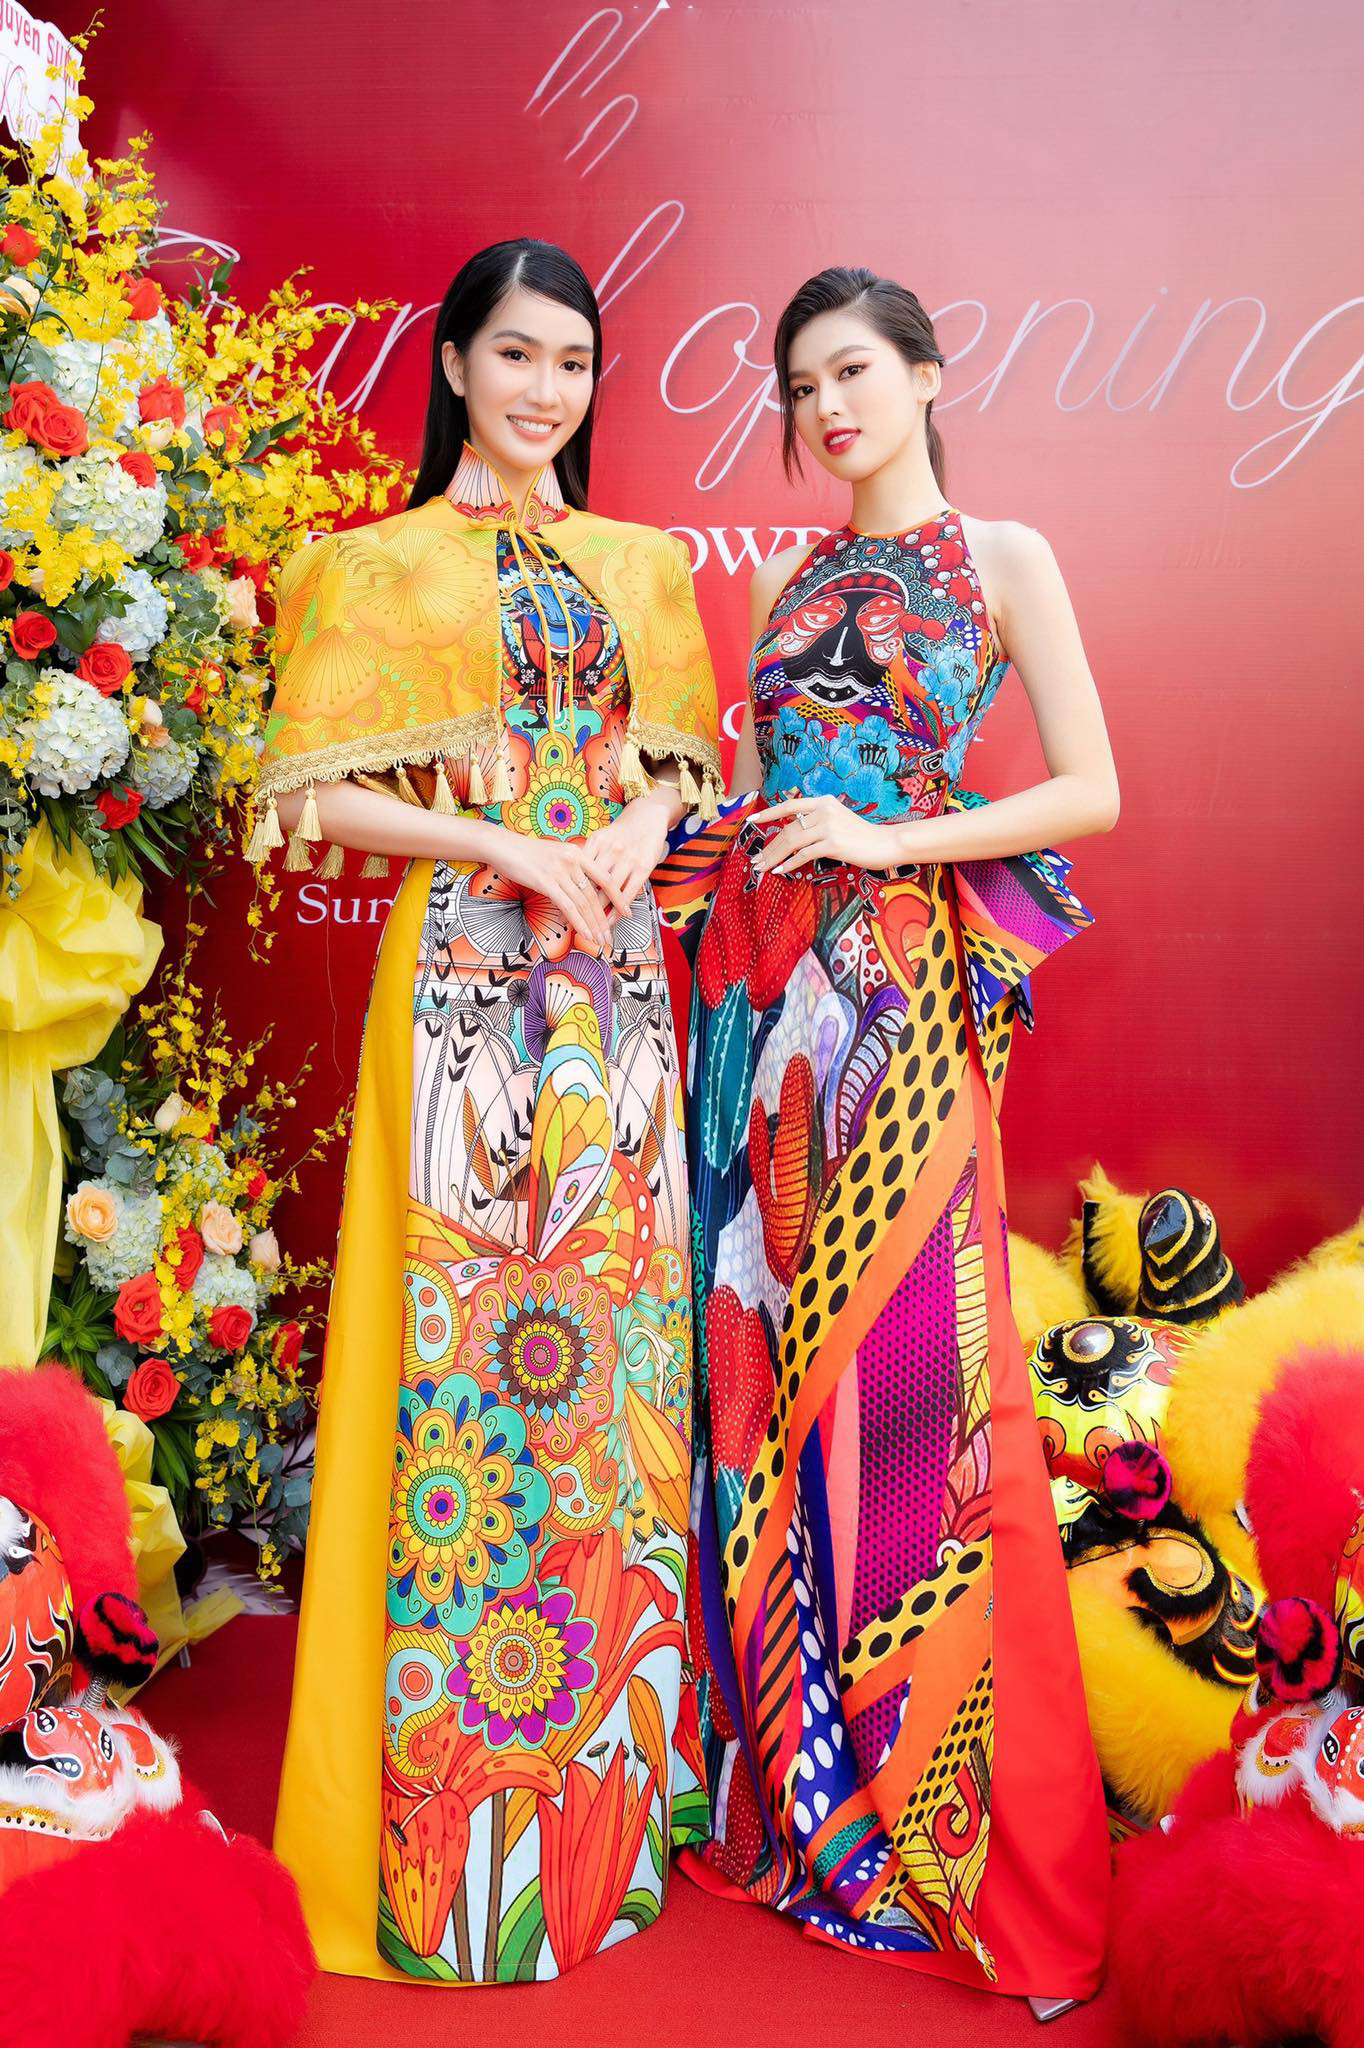 Đến dự sự kiện chúc mừng NTK Tạ Linh Trần, 2 người đẹp nổi bật với áo dài cách tân họa tiết hoa khoe nhan sắc trẻ trung, thanh lịch.